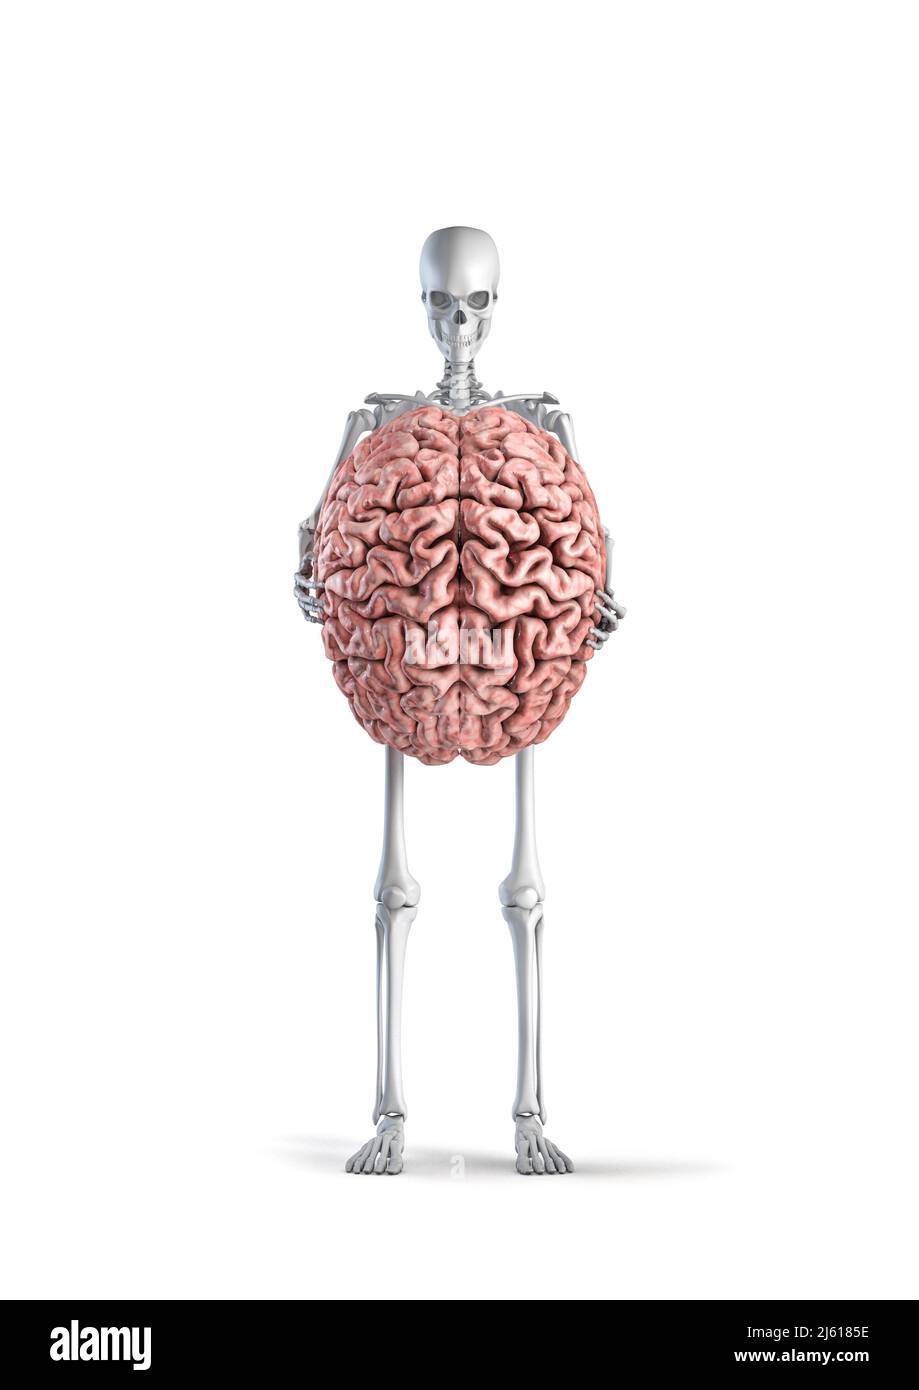 Scheletro con cervello - 3D illustrazione dello scheletro umano maschile che tiene il cervello umano isolato su sfondo bianco studio Foto Stock